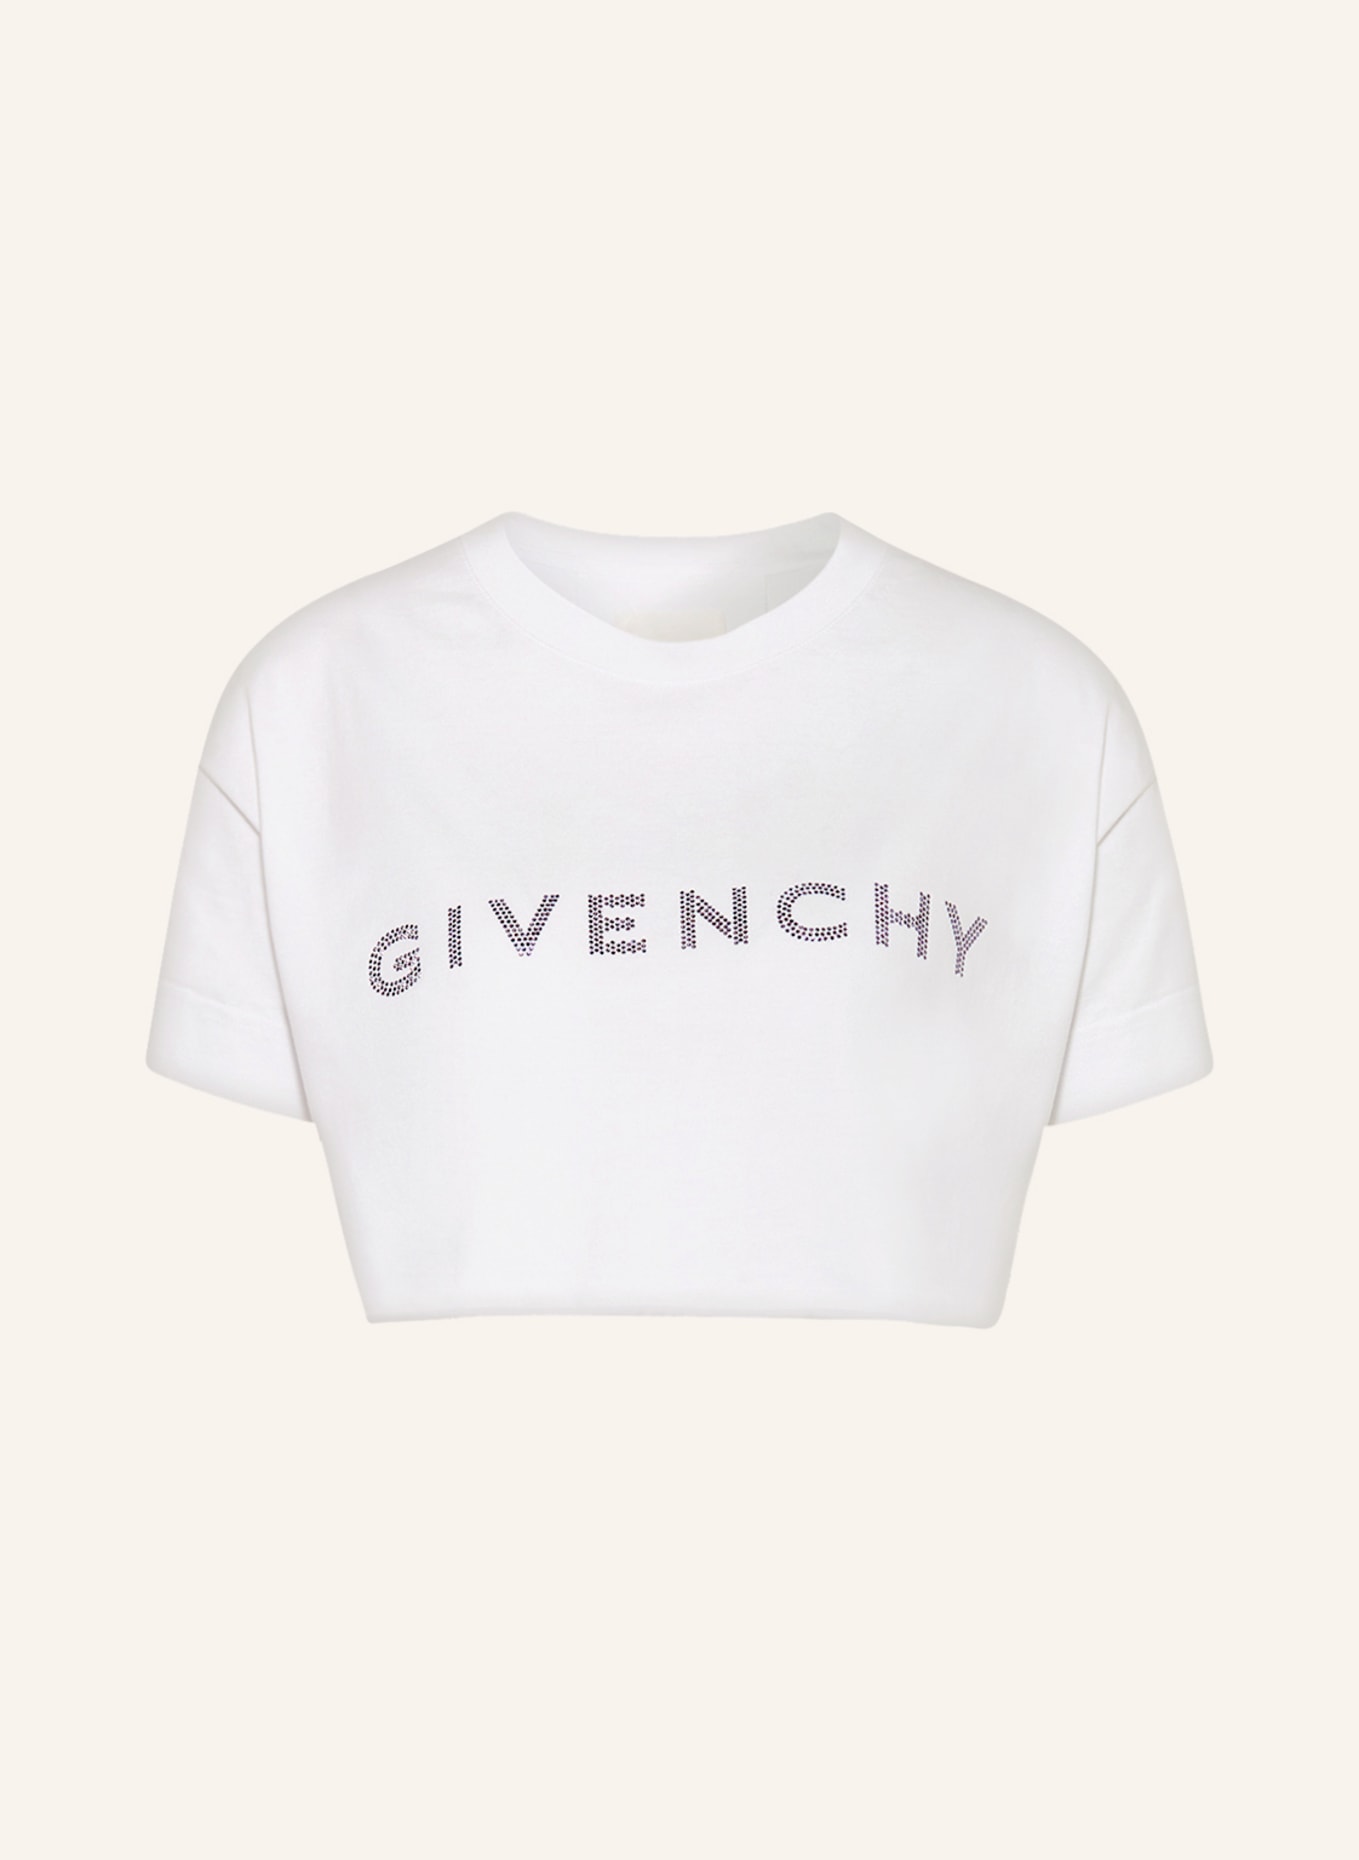 GIVENCHY Cropped-Shirt mit Schmucksteinen, Farbe: WEISS/ HELLLILA (Bild 1)